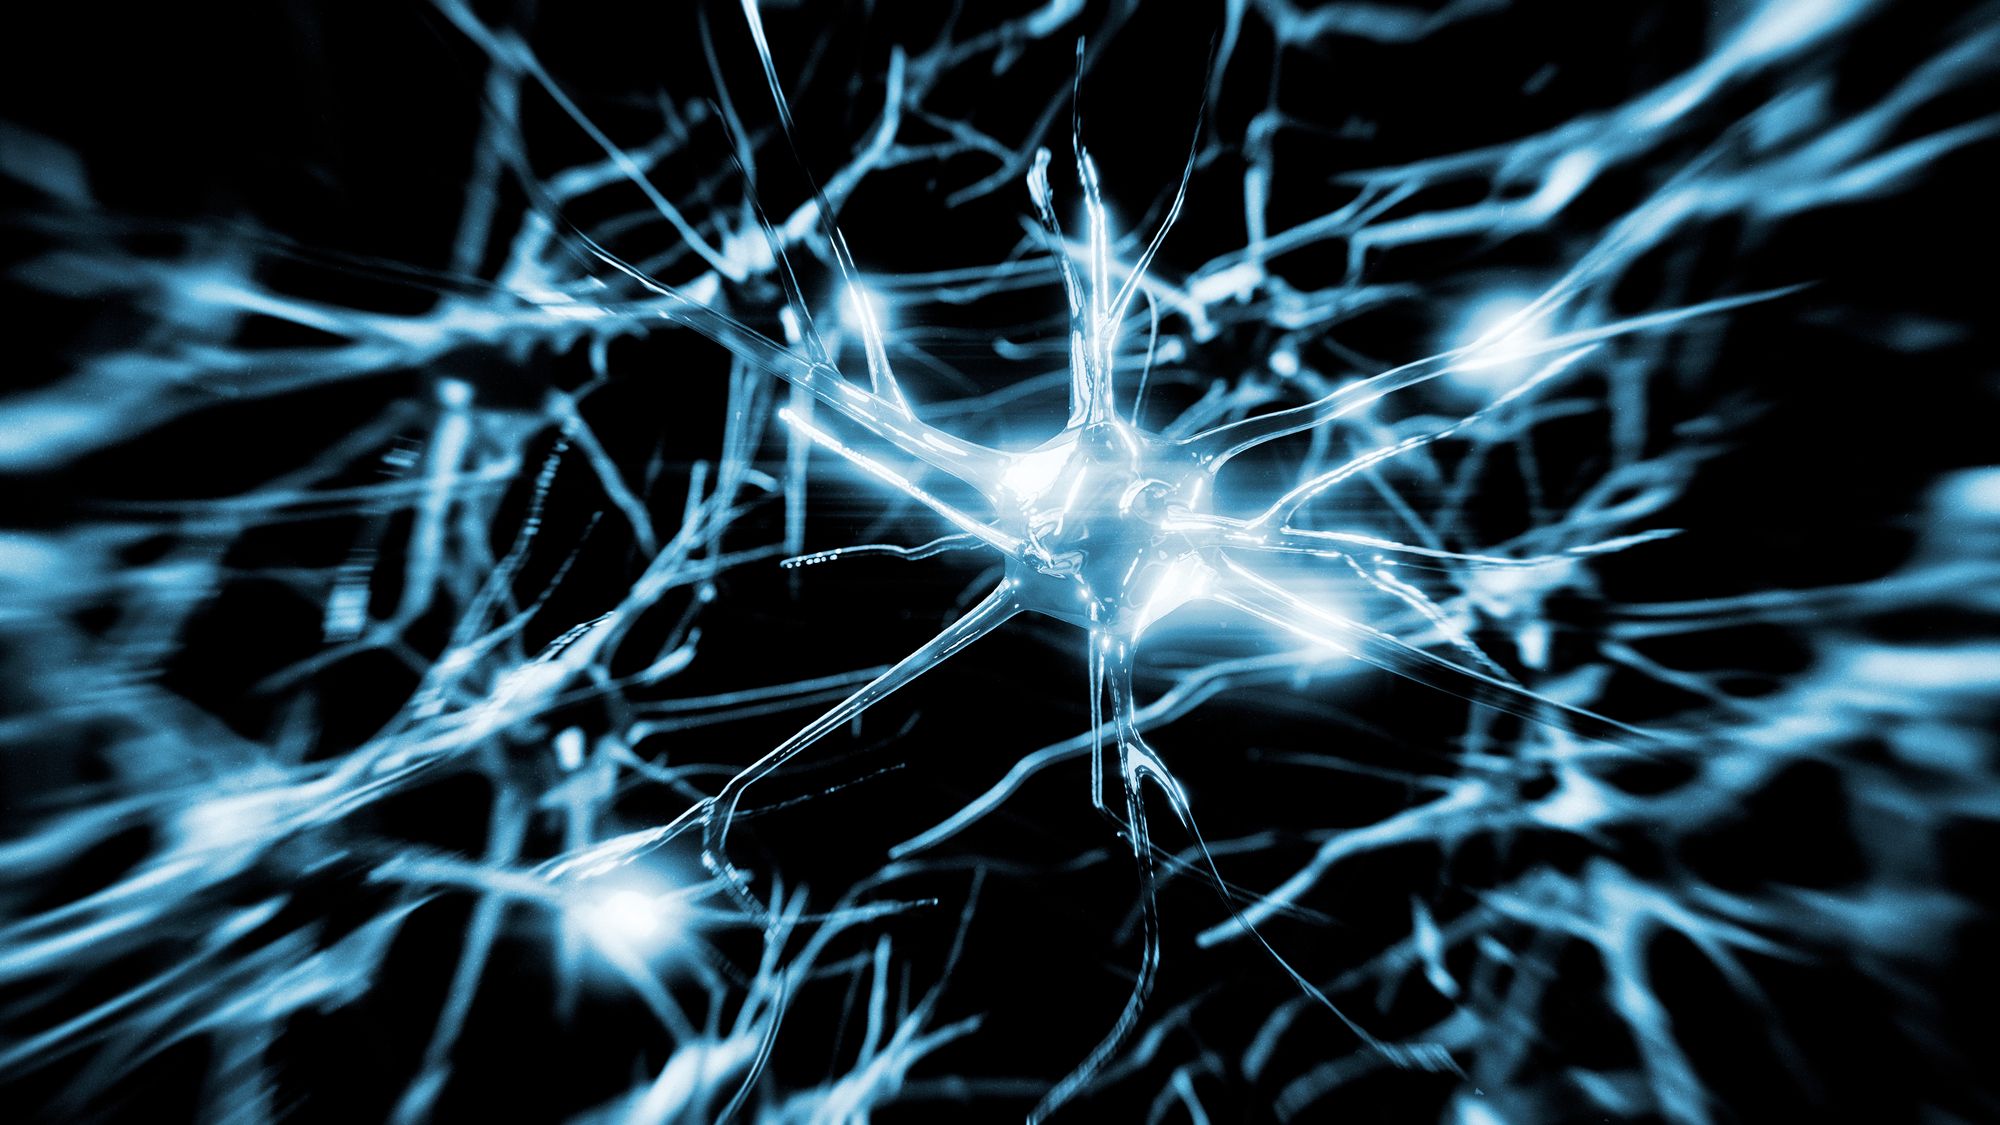 Ihmisen aivoissa on arvioiden mukaan lähes 100 miljardia her­mo­solua eli neuronia, jotka käsittelevät ja jakavat tietoa sähköisten hermoimpulssien avulla. Jos aivojen hermosoluissa tai -verkoissa on häiriöitä, ihminen voi saada eriasteisia muistioireita. © iStock